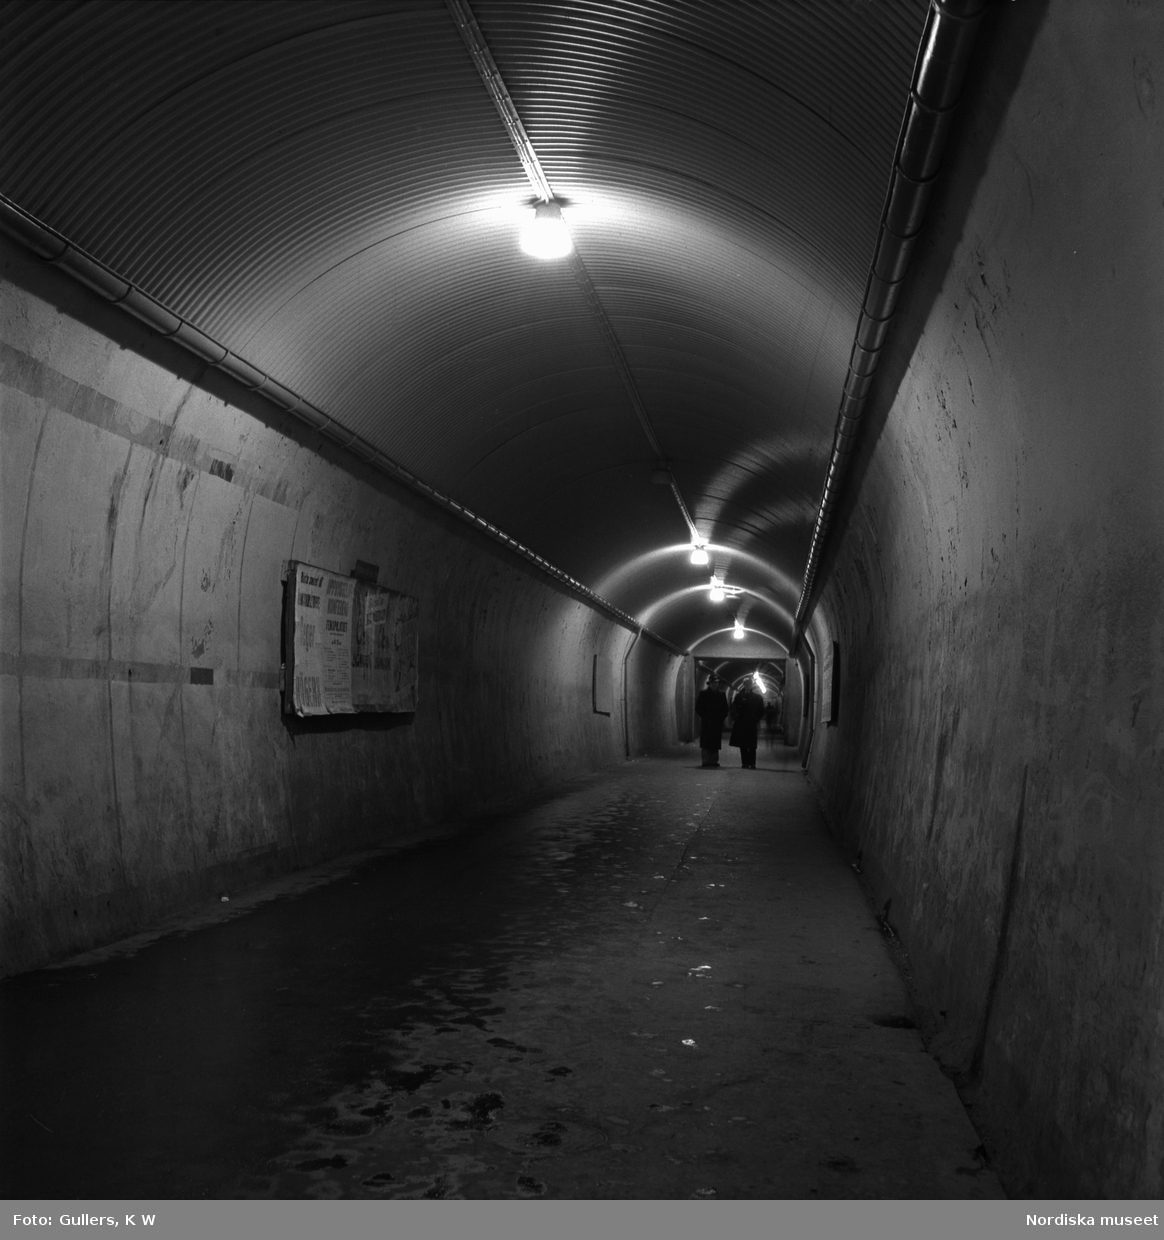 Stockholm. "Brunkebergstunnelns långa, grå schakt ekar av stegen från de sista nattvandrarna."